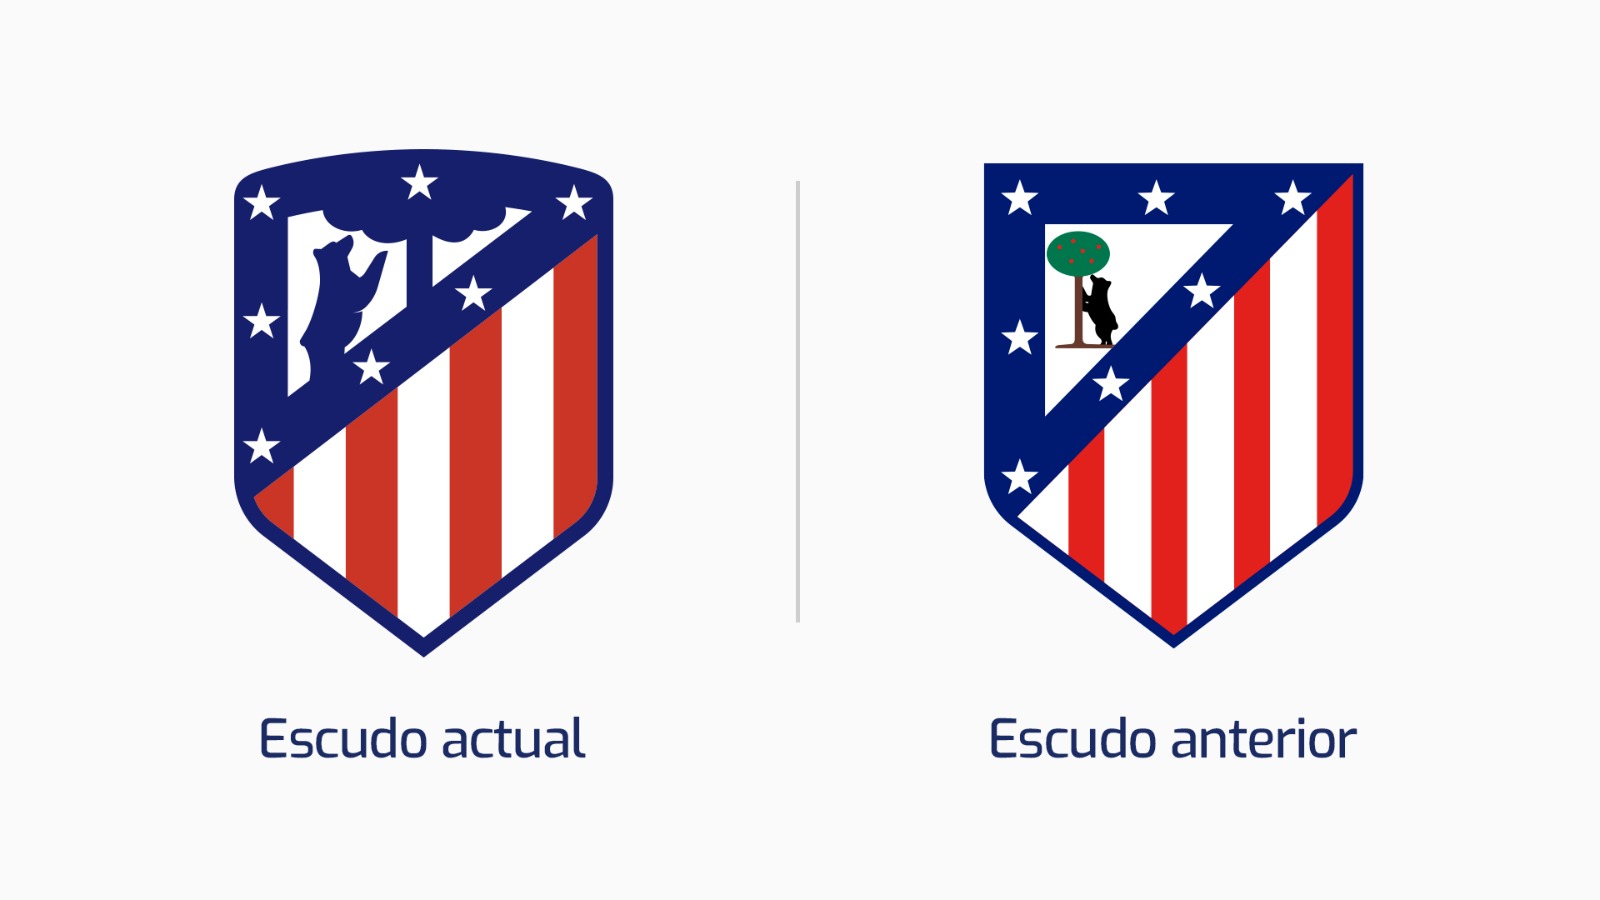 Após protestos, Atlético de Madri oficializa retorno de escudo antigo